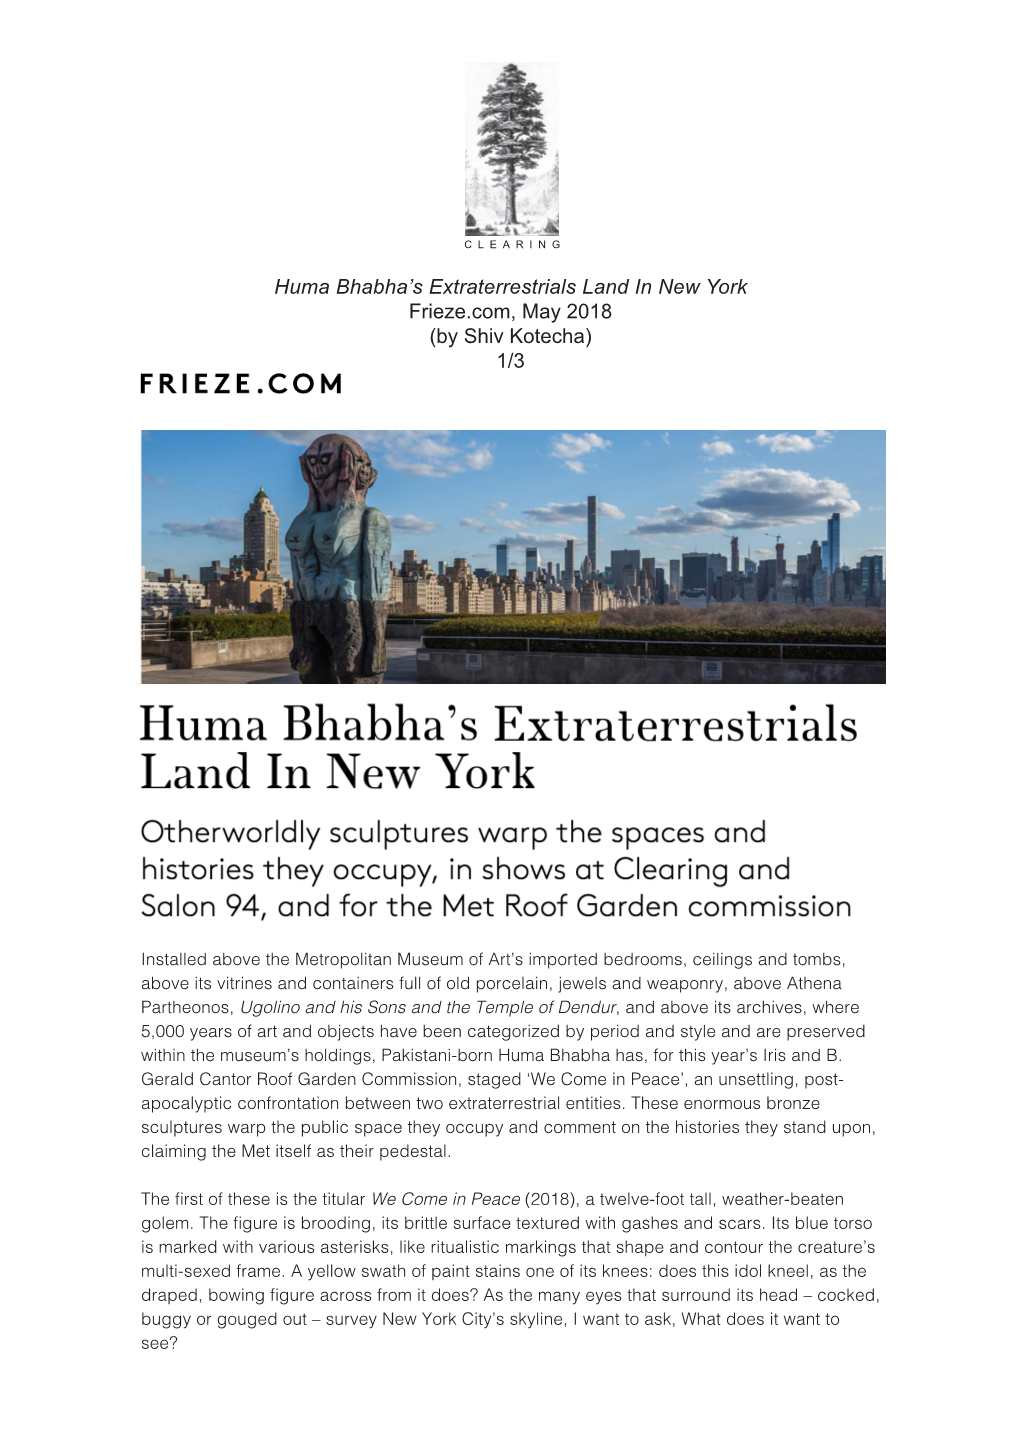 Huma Bhabha's Extraterrestrials Land in New York Frieze.Com, May 2018